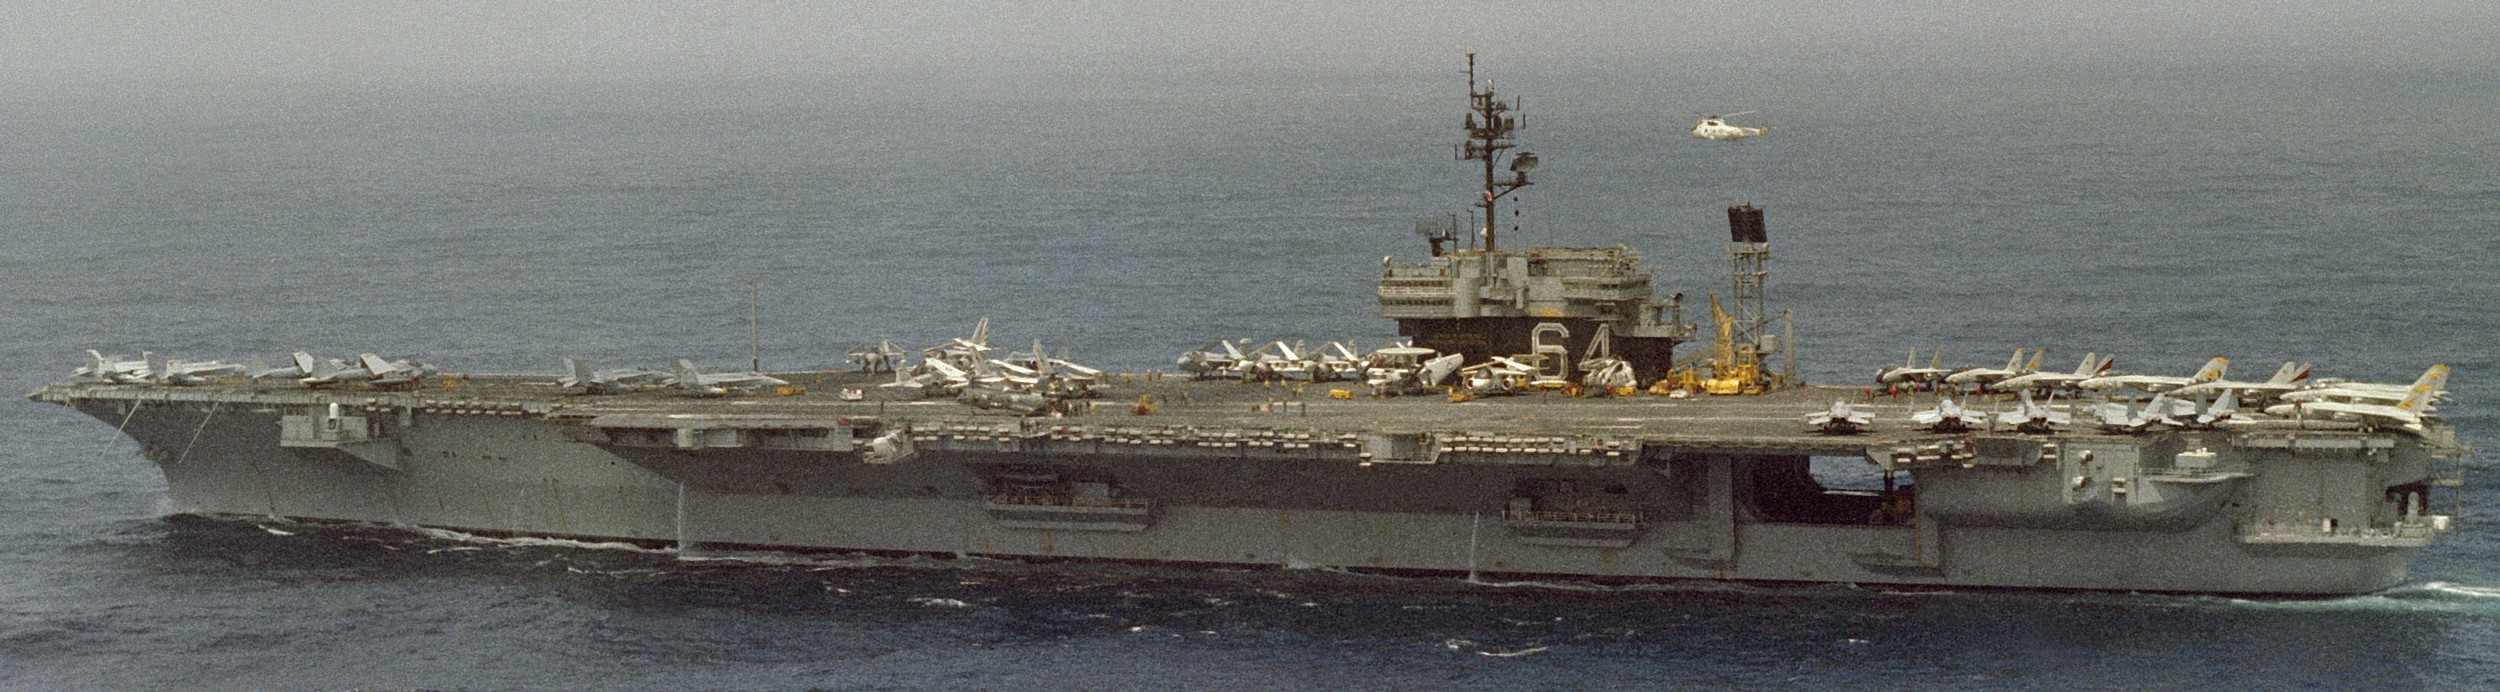 cv-64 uss constellation kitty hawk class aircraft carrier air wing cvw-14 us navy 70